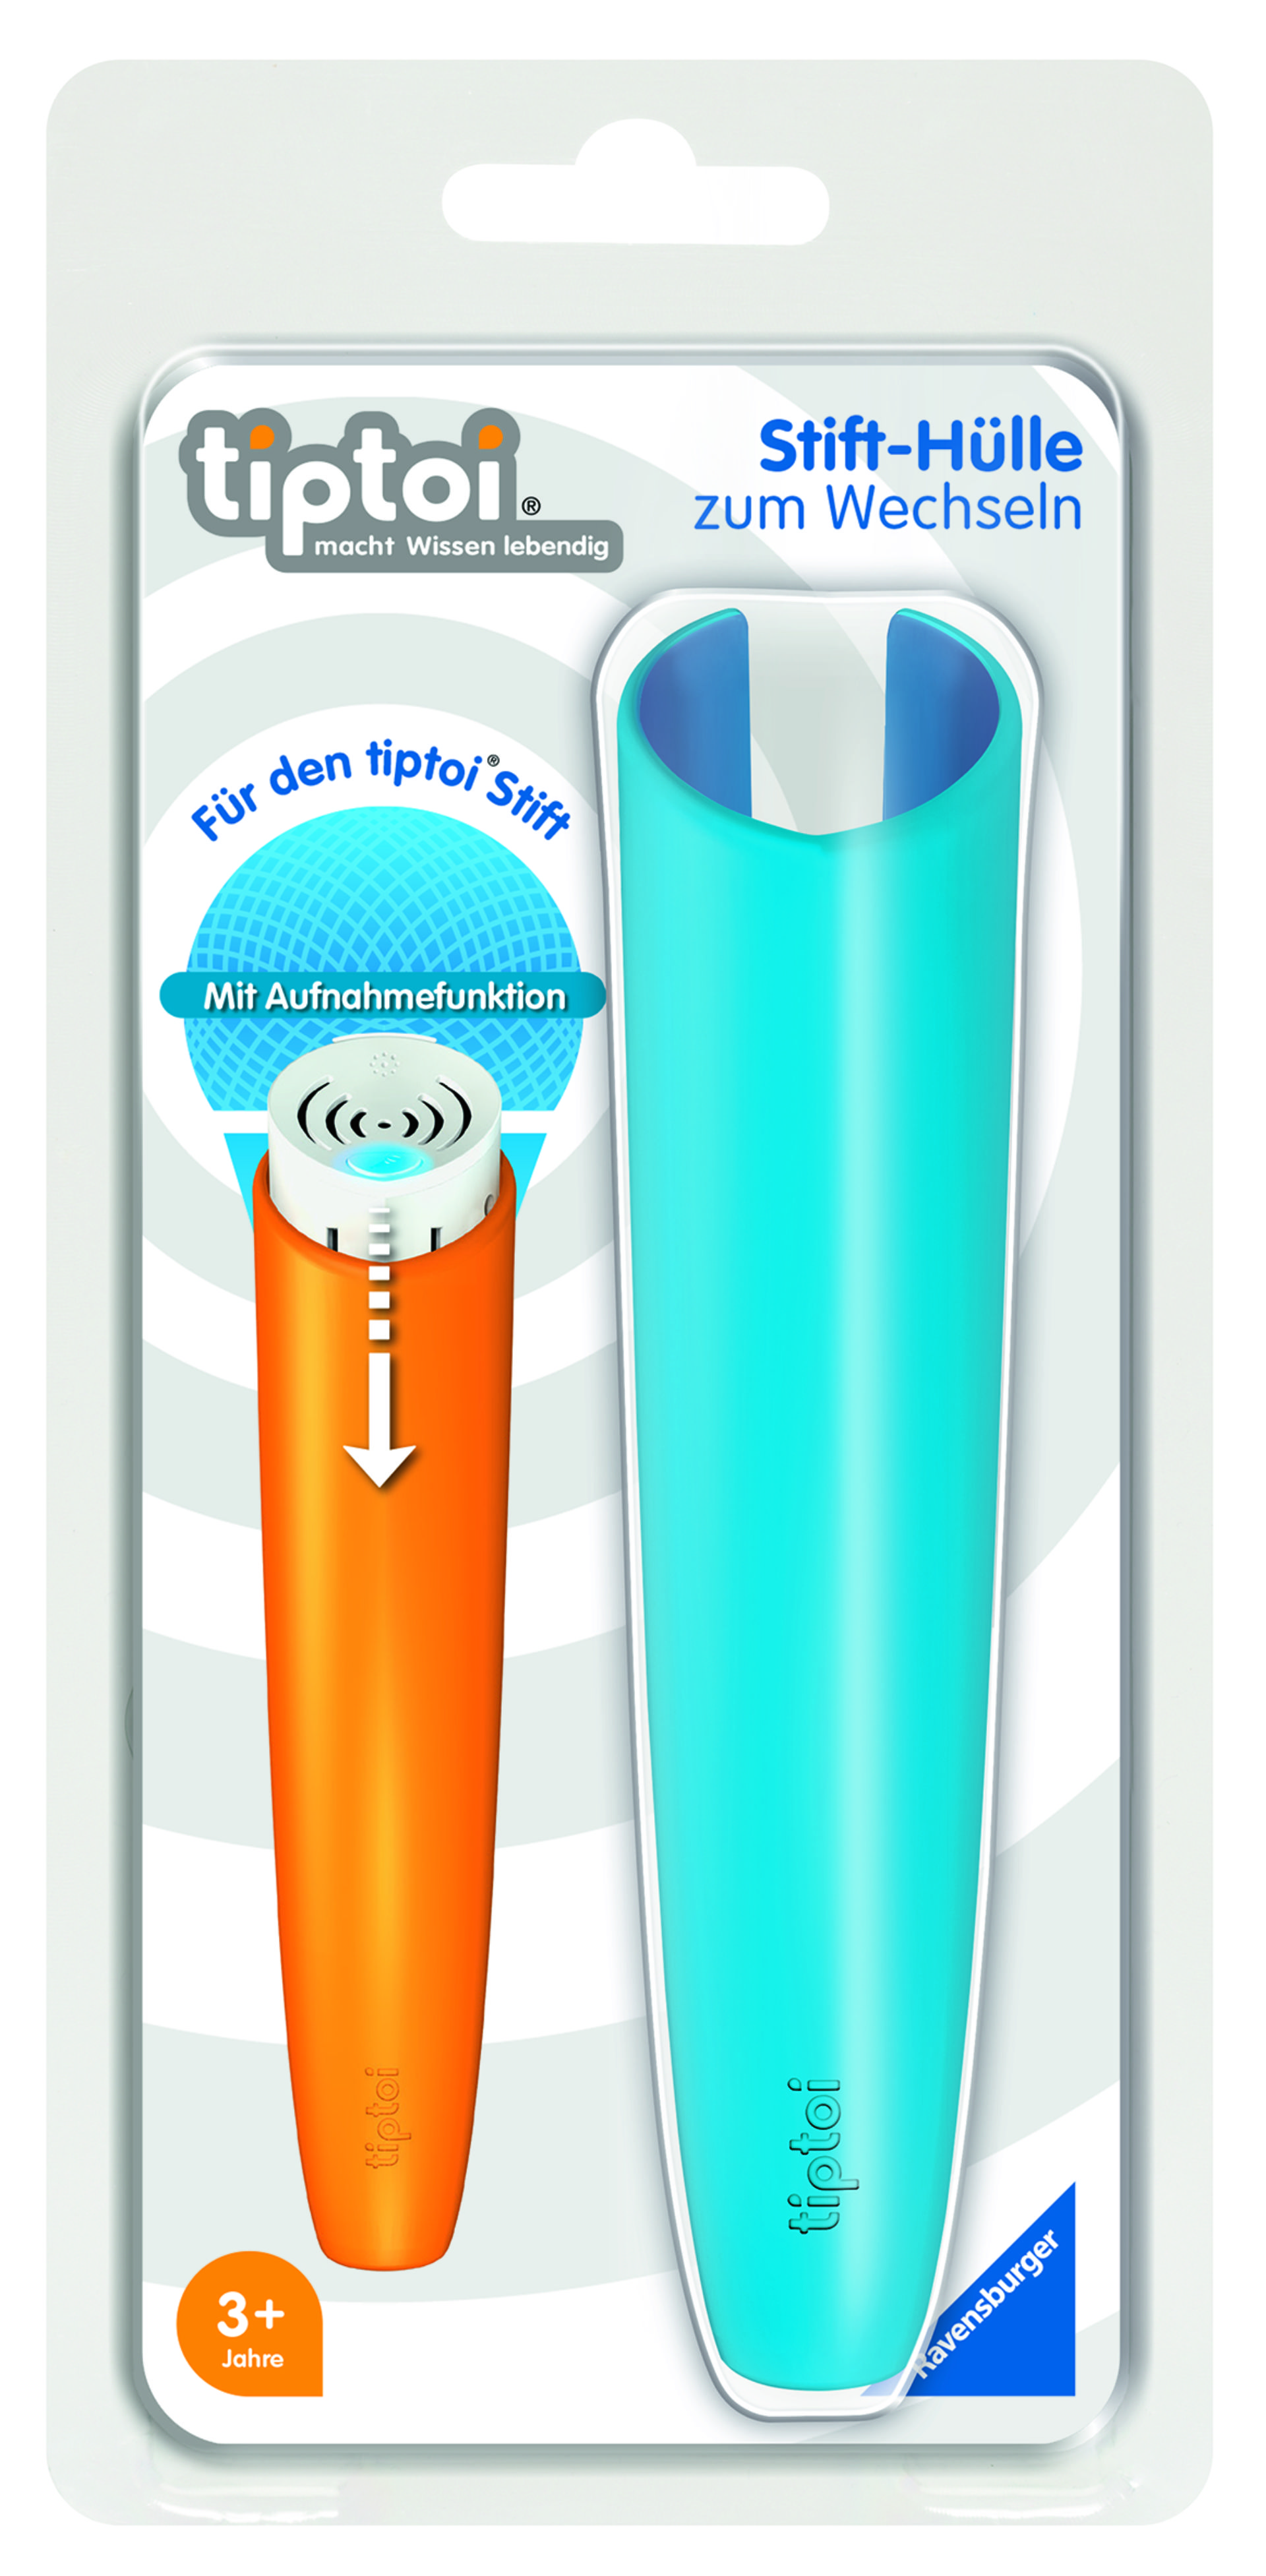 Stifthülle blau zum Wechseln für den tiptoi® Stift mit Aufnahmefunktion (3. Generation)